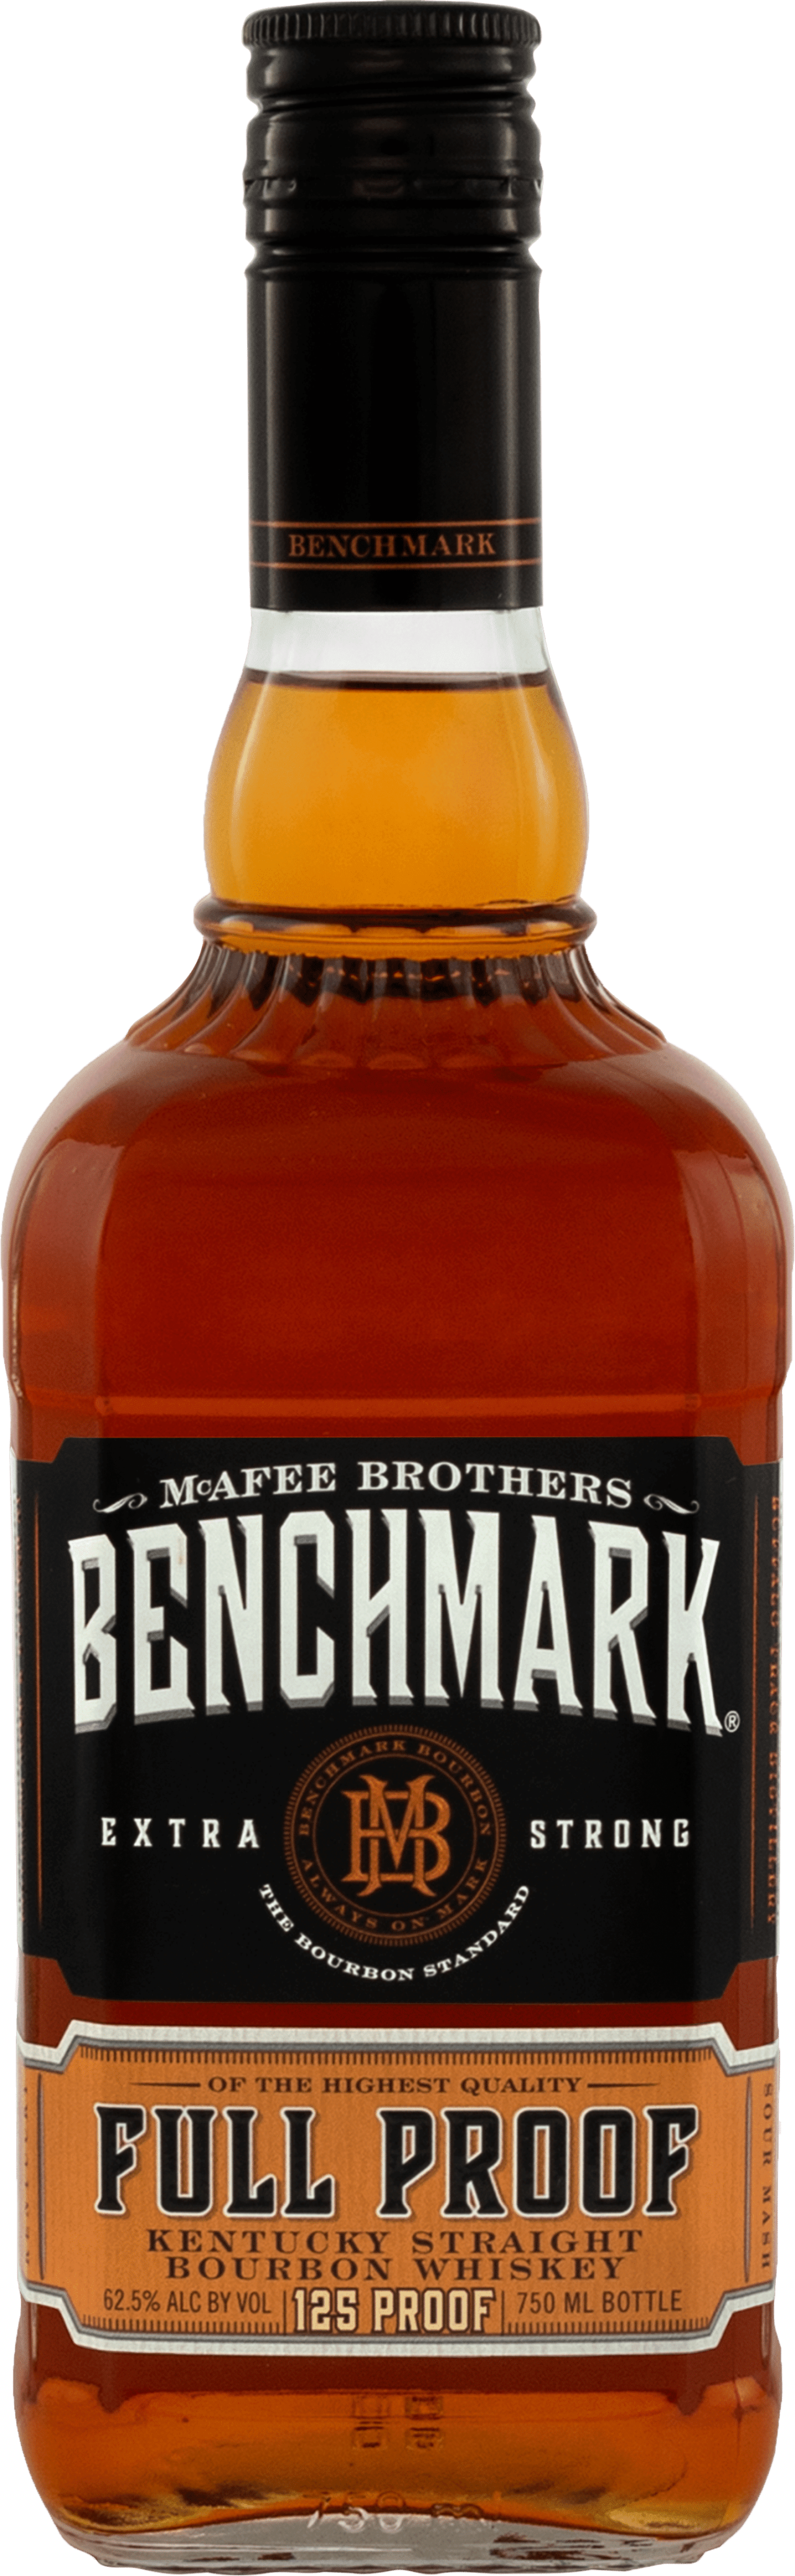 Benchmark Full Proof Kentucky Full Proof Whiskey bottle